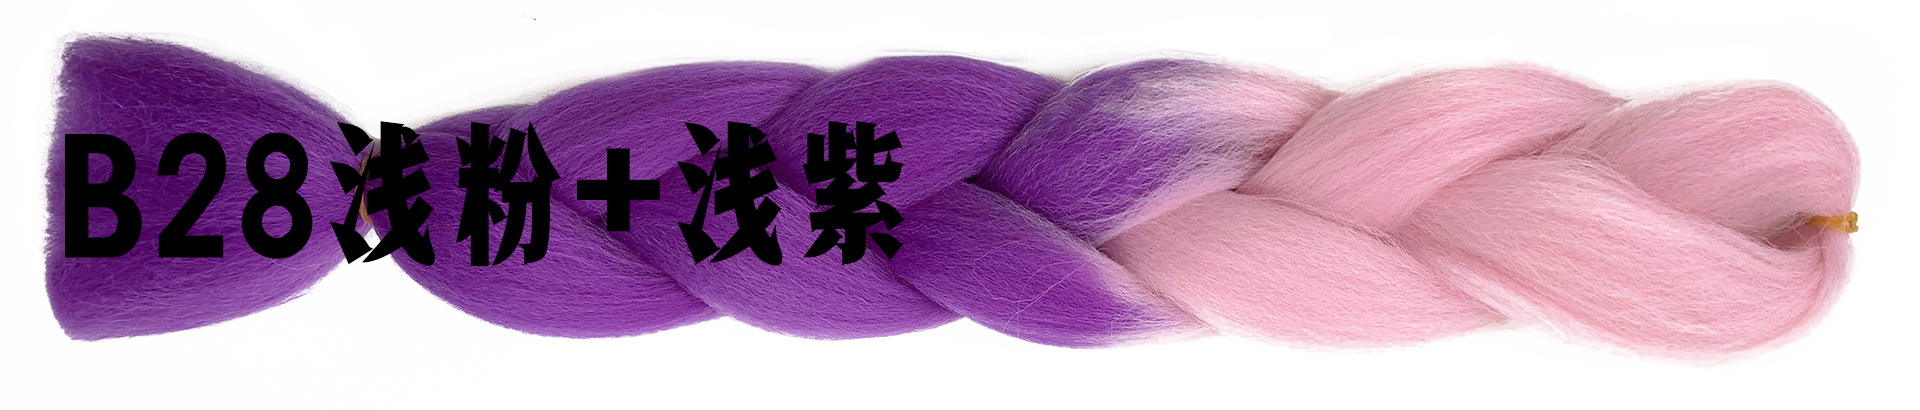 B28浅粉+浅紫.jpg